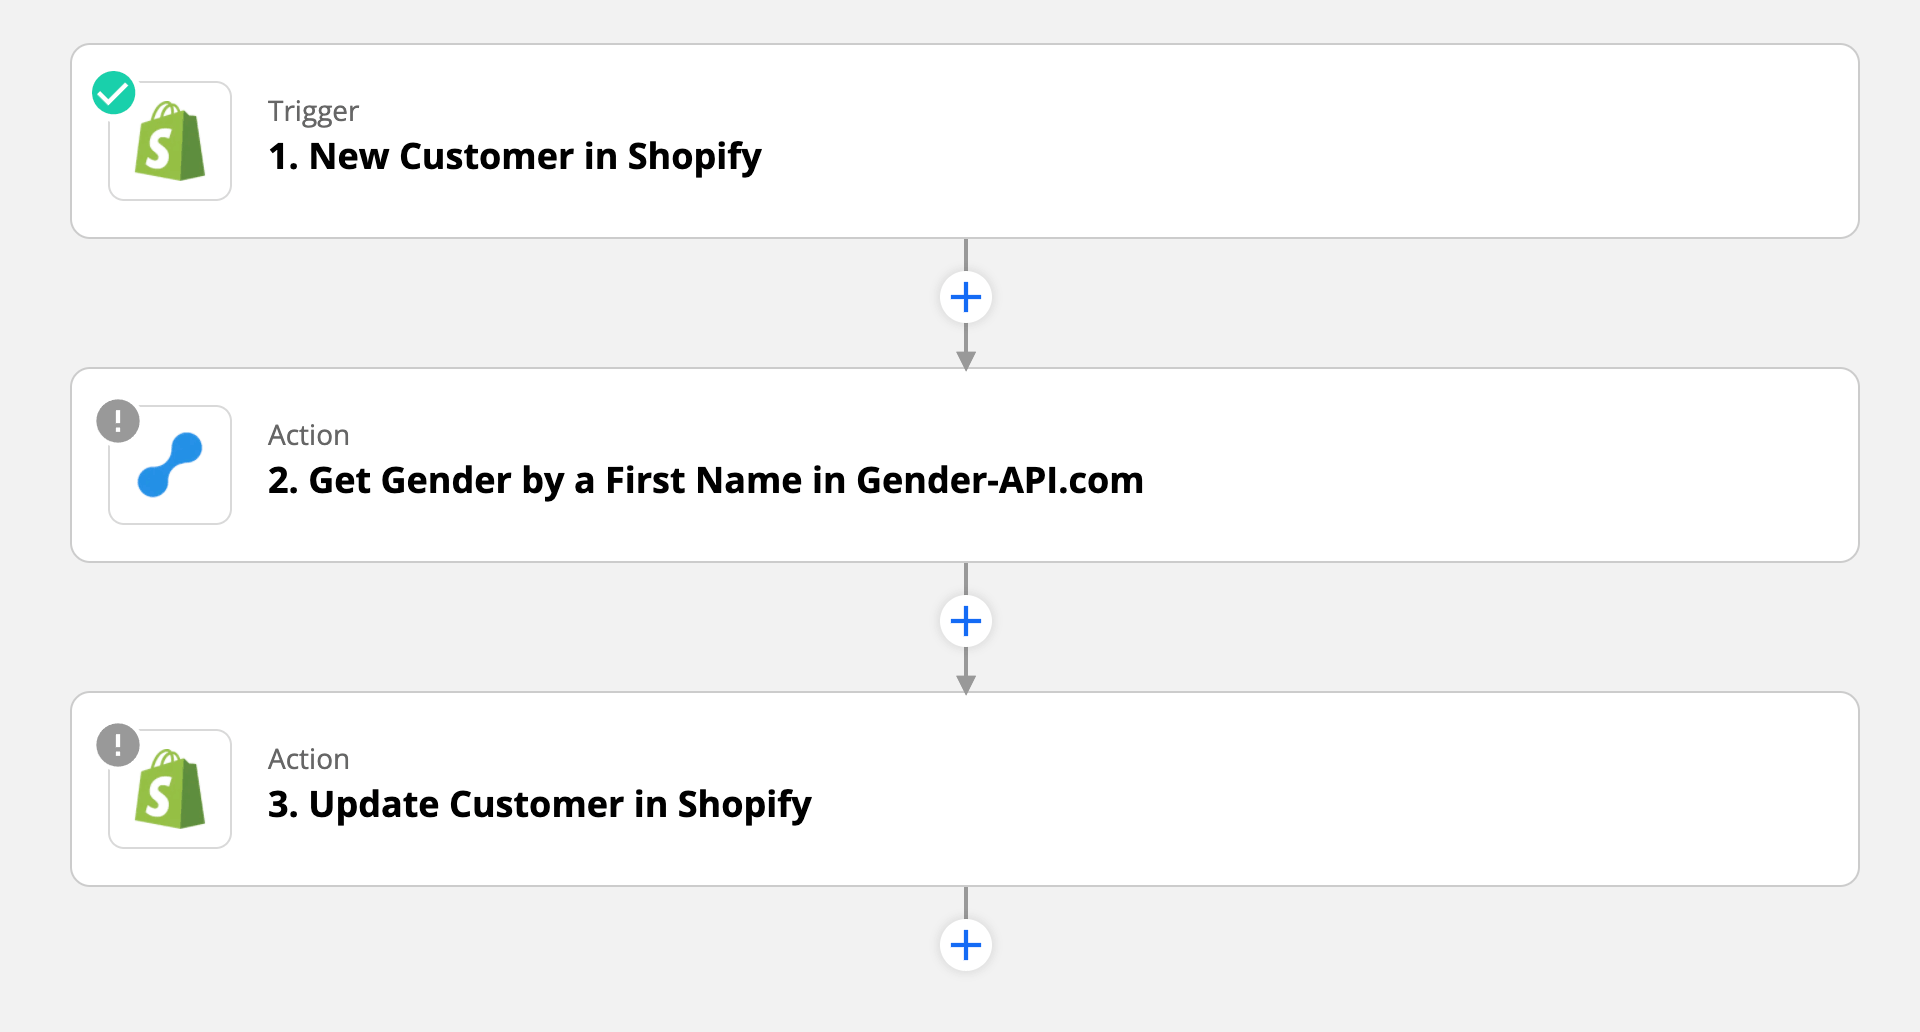 Classer par genre les nouveaux clients de Shopify